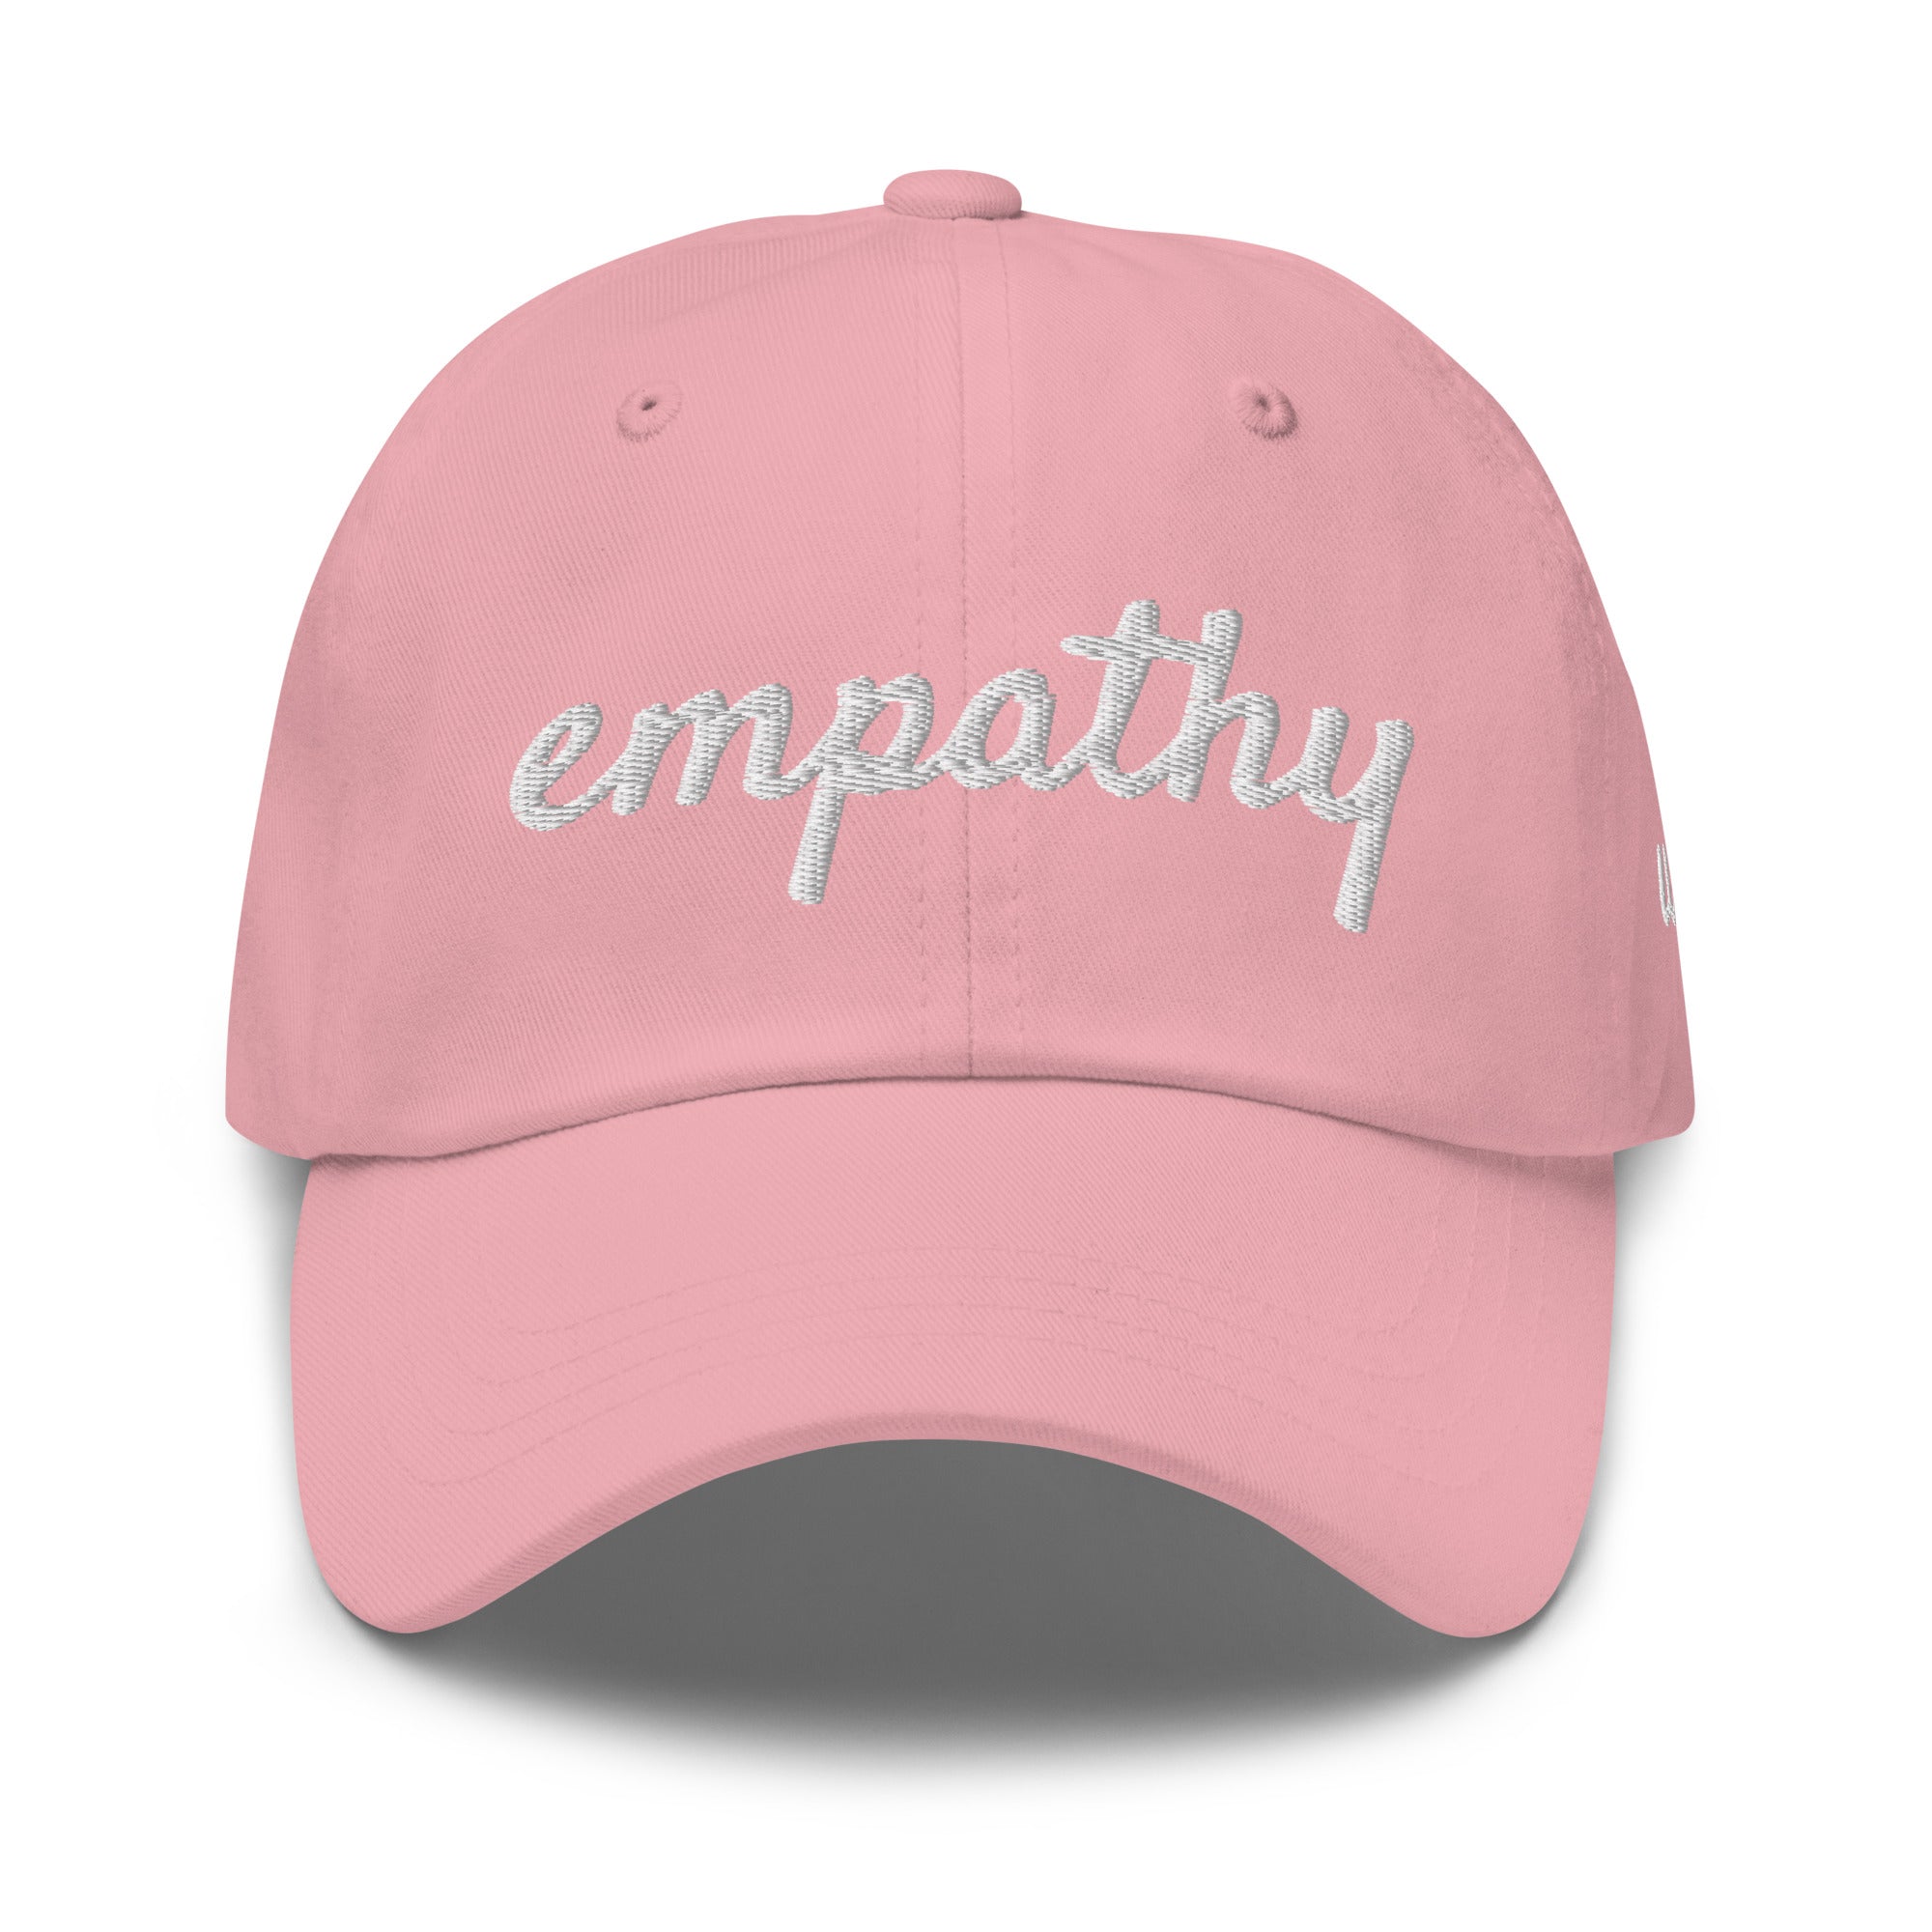 Empathy Dad Hat